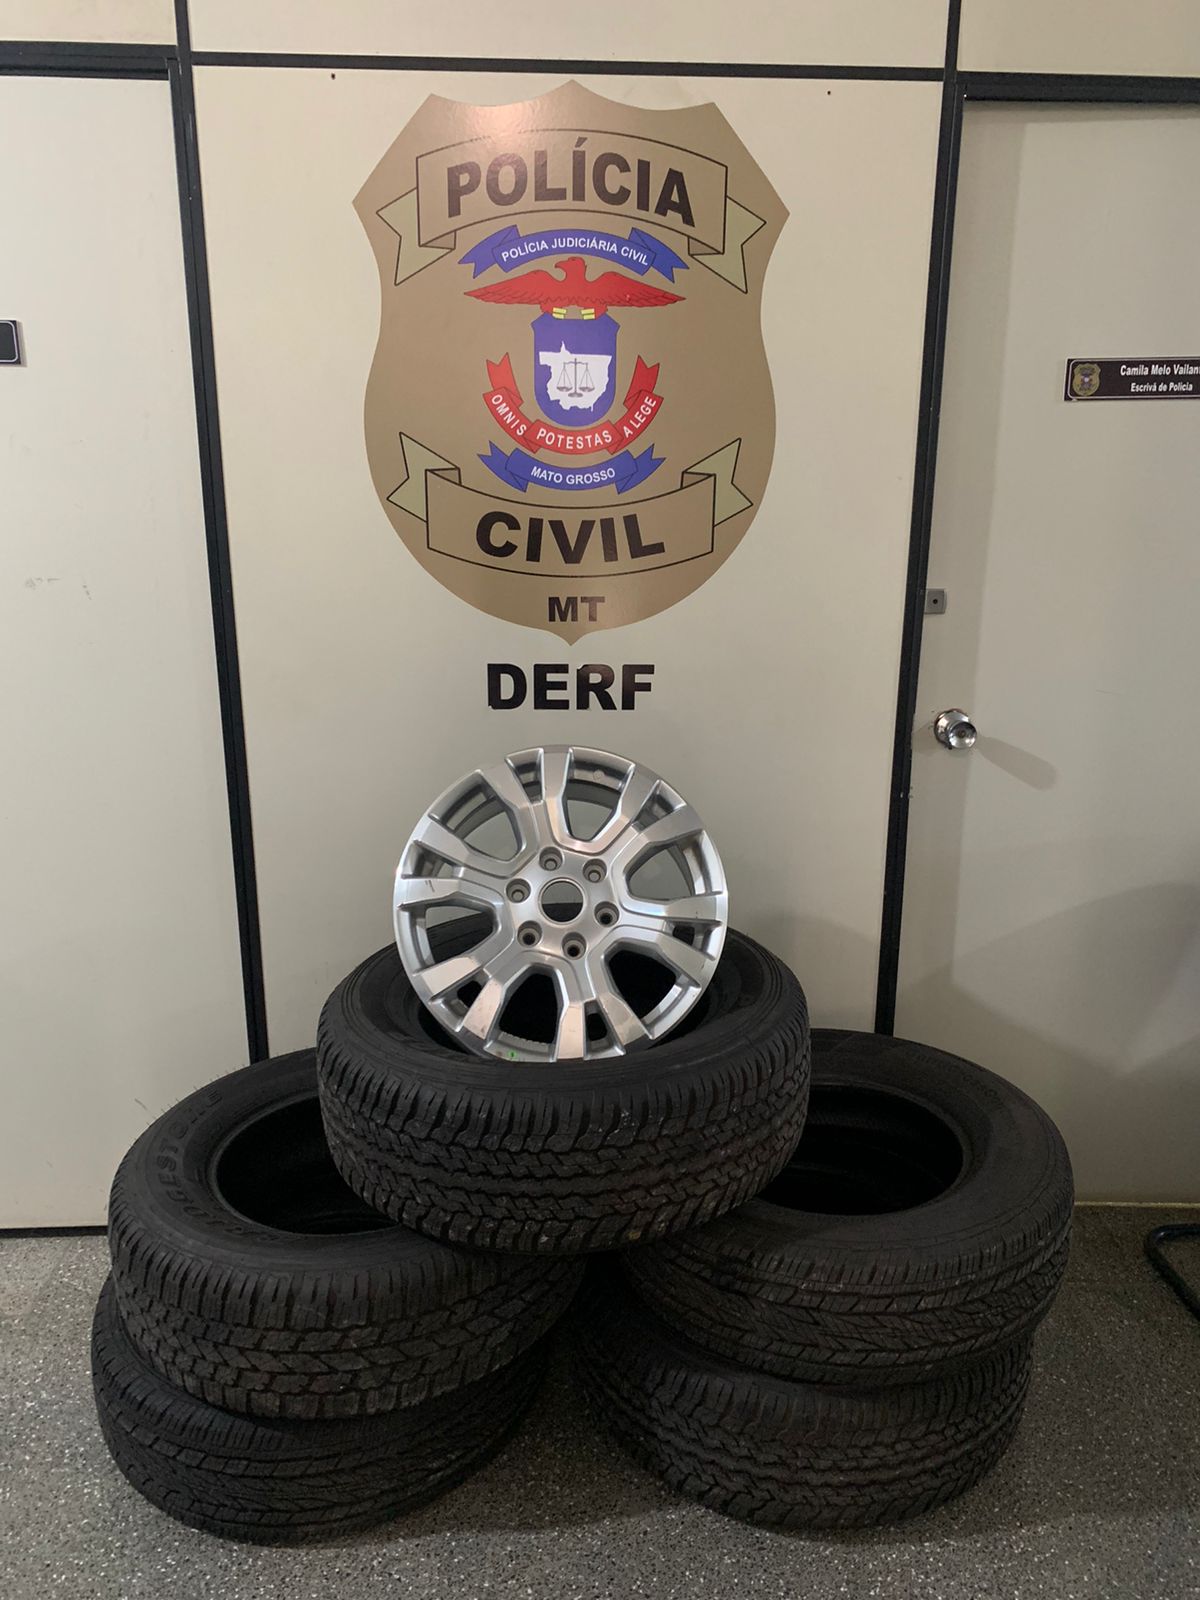 Suspeitos por furto de pneus e receptação qualificada são presos em flagrante pela Polícia Civil, em Cuiabá